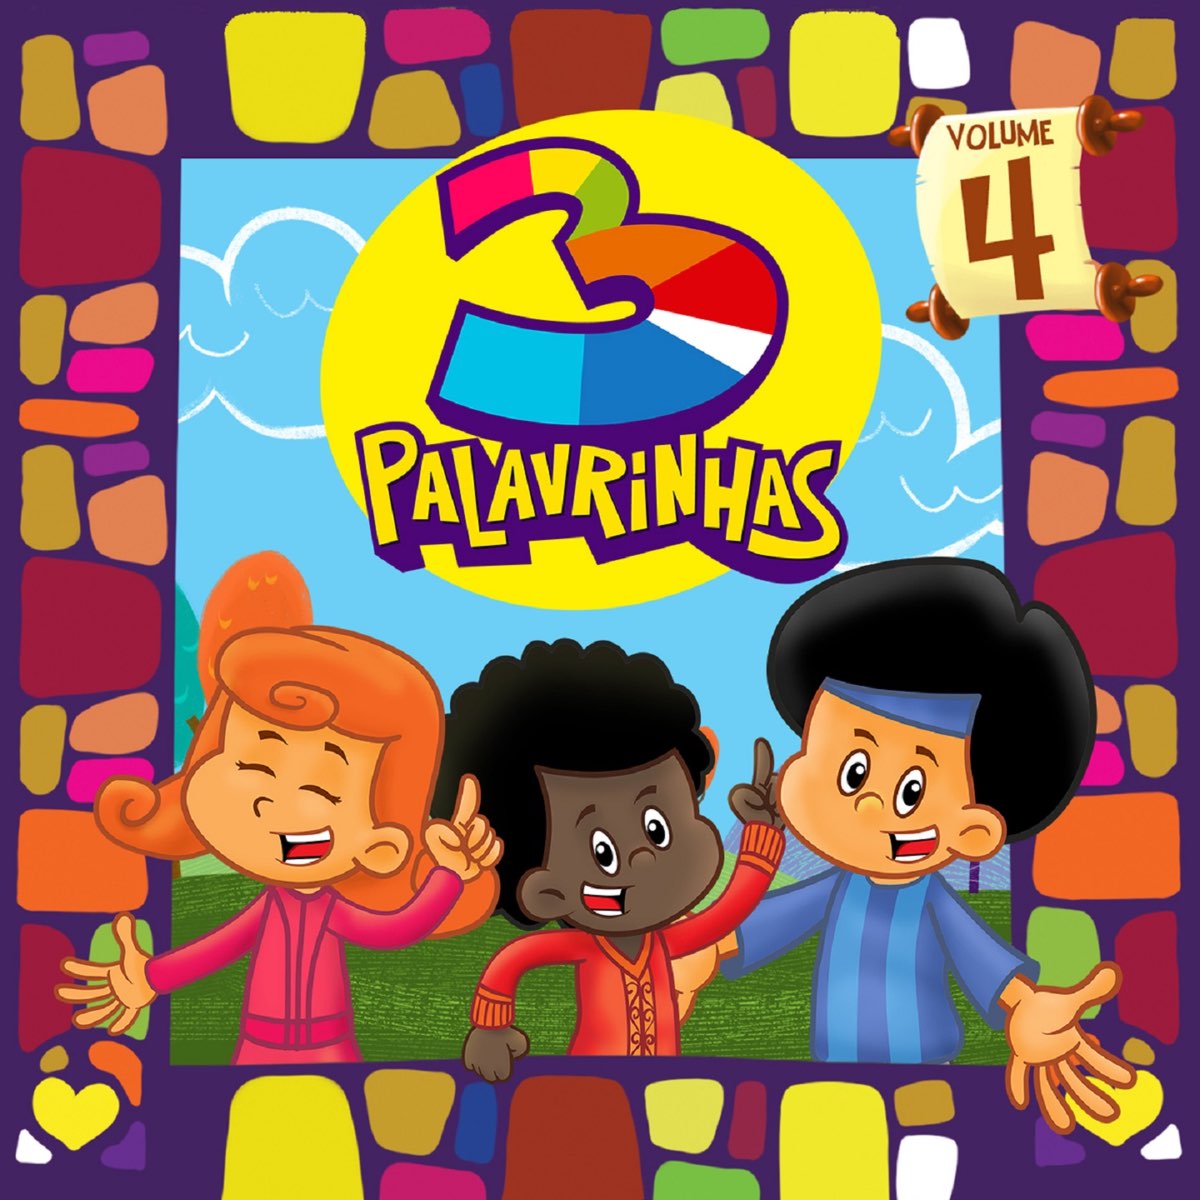 3 Palavrinhas, Vol. 4 - Album by 3 Palavrinhas - Apple Music